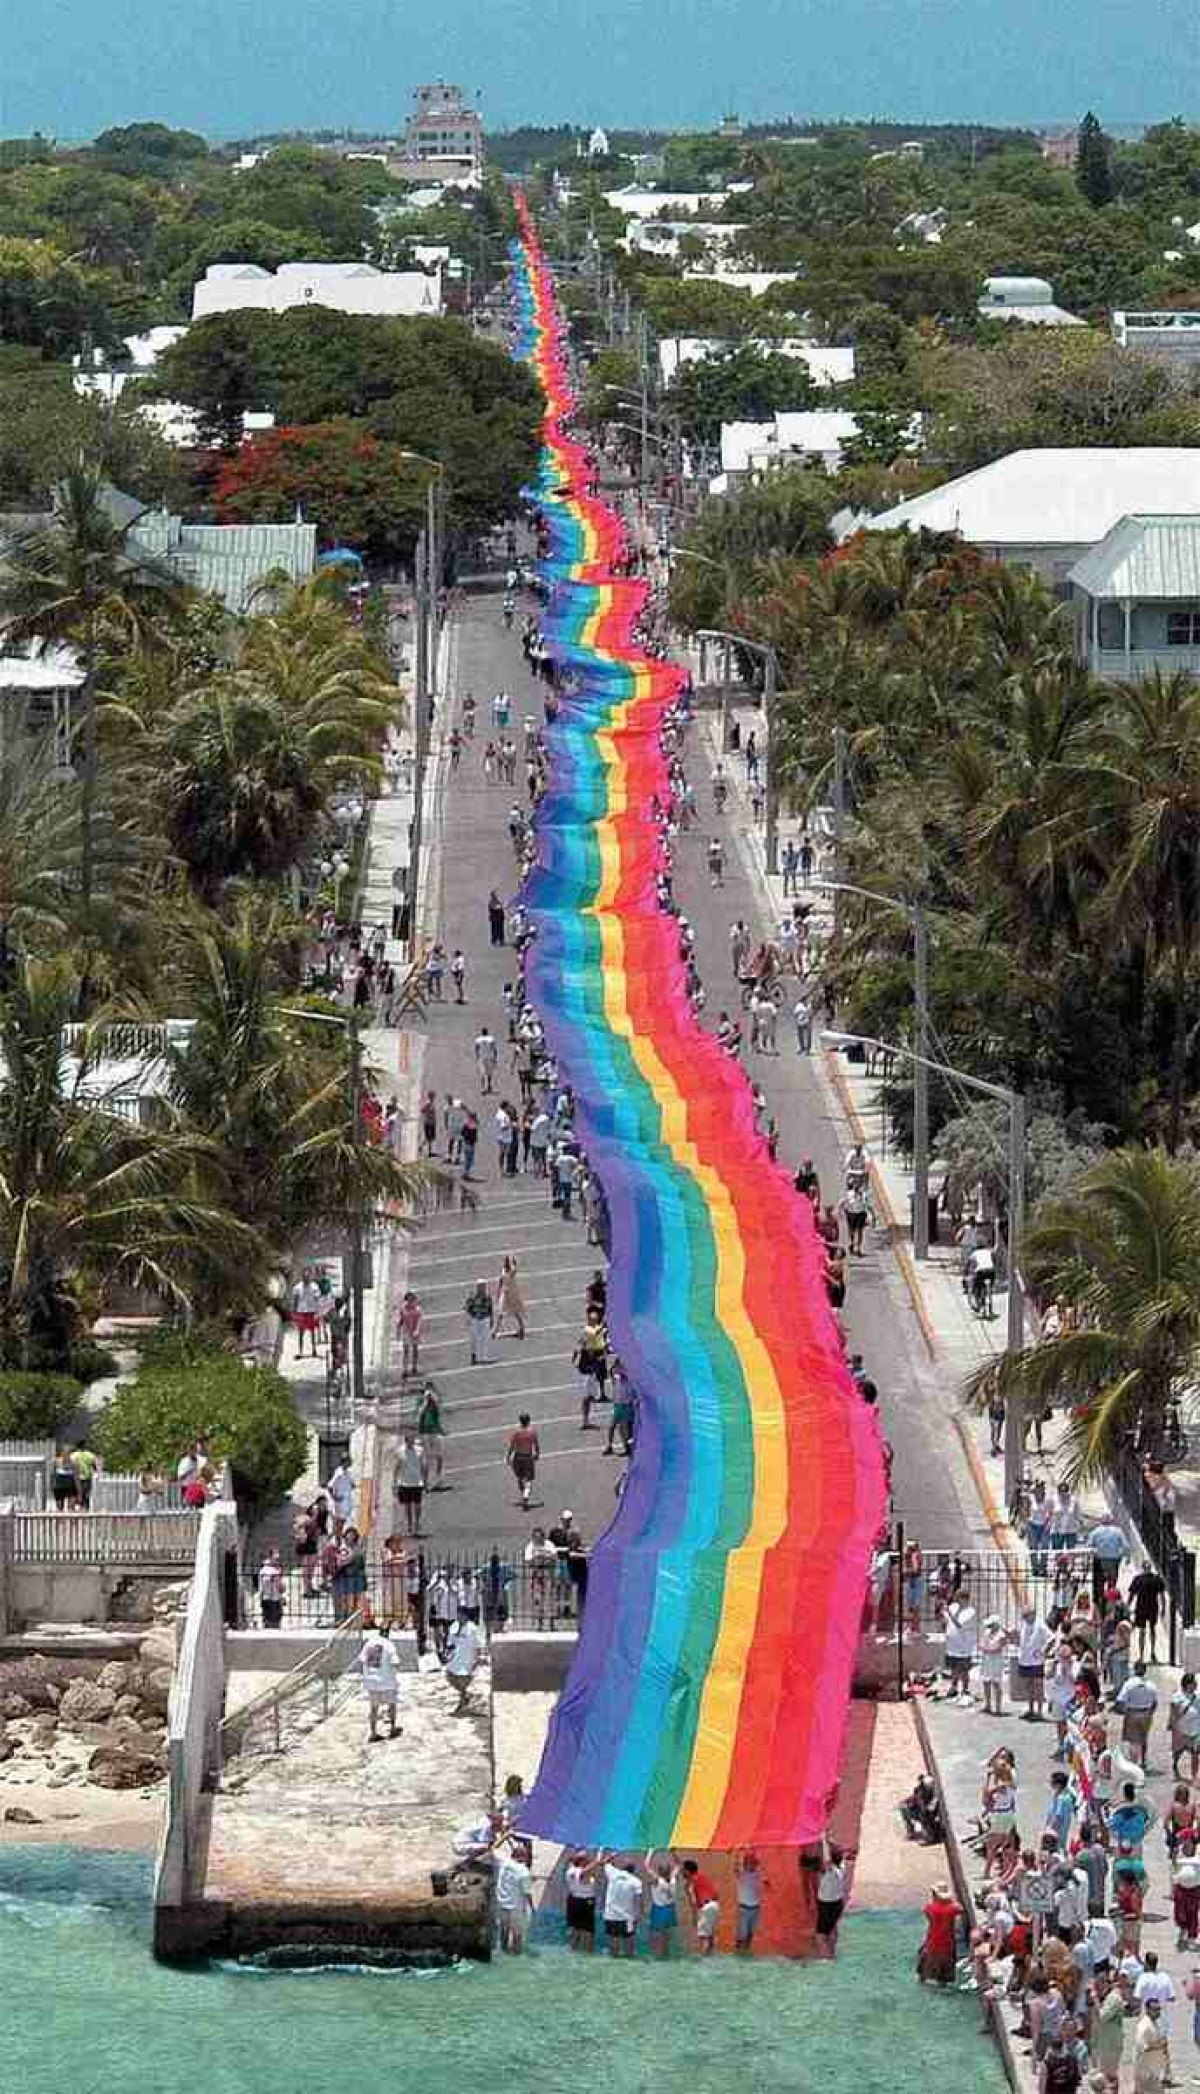 Bandeira gigante de oito cores toma as ruas de Key West, na Flórida, em comemoração ao 25º aniversário do símbolo